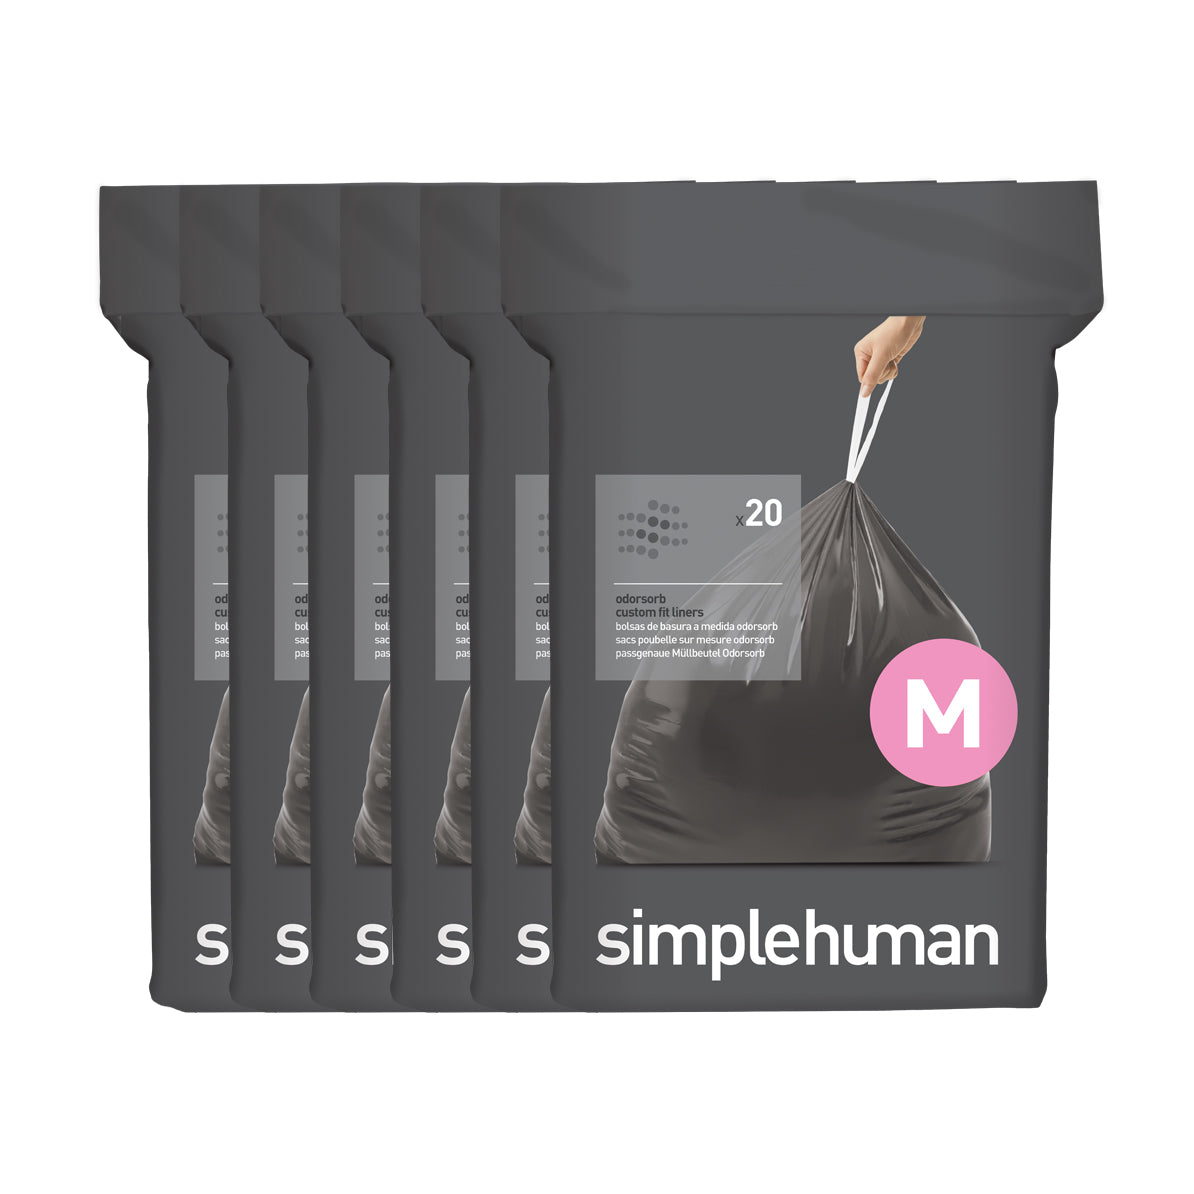 simplehuman code M odorsorb custom fit liners